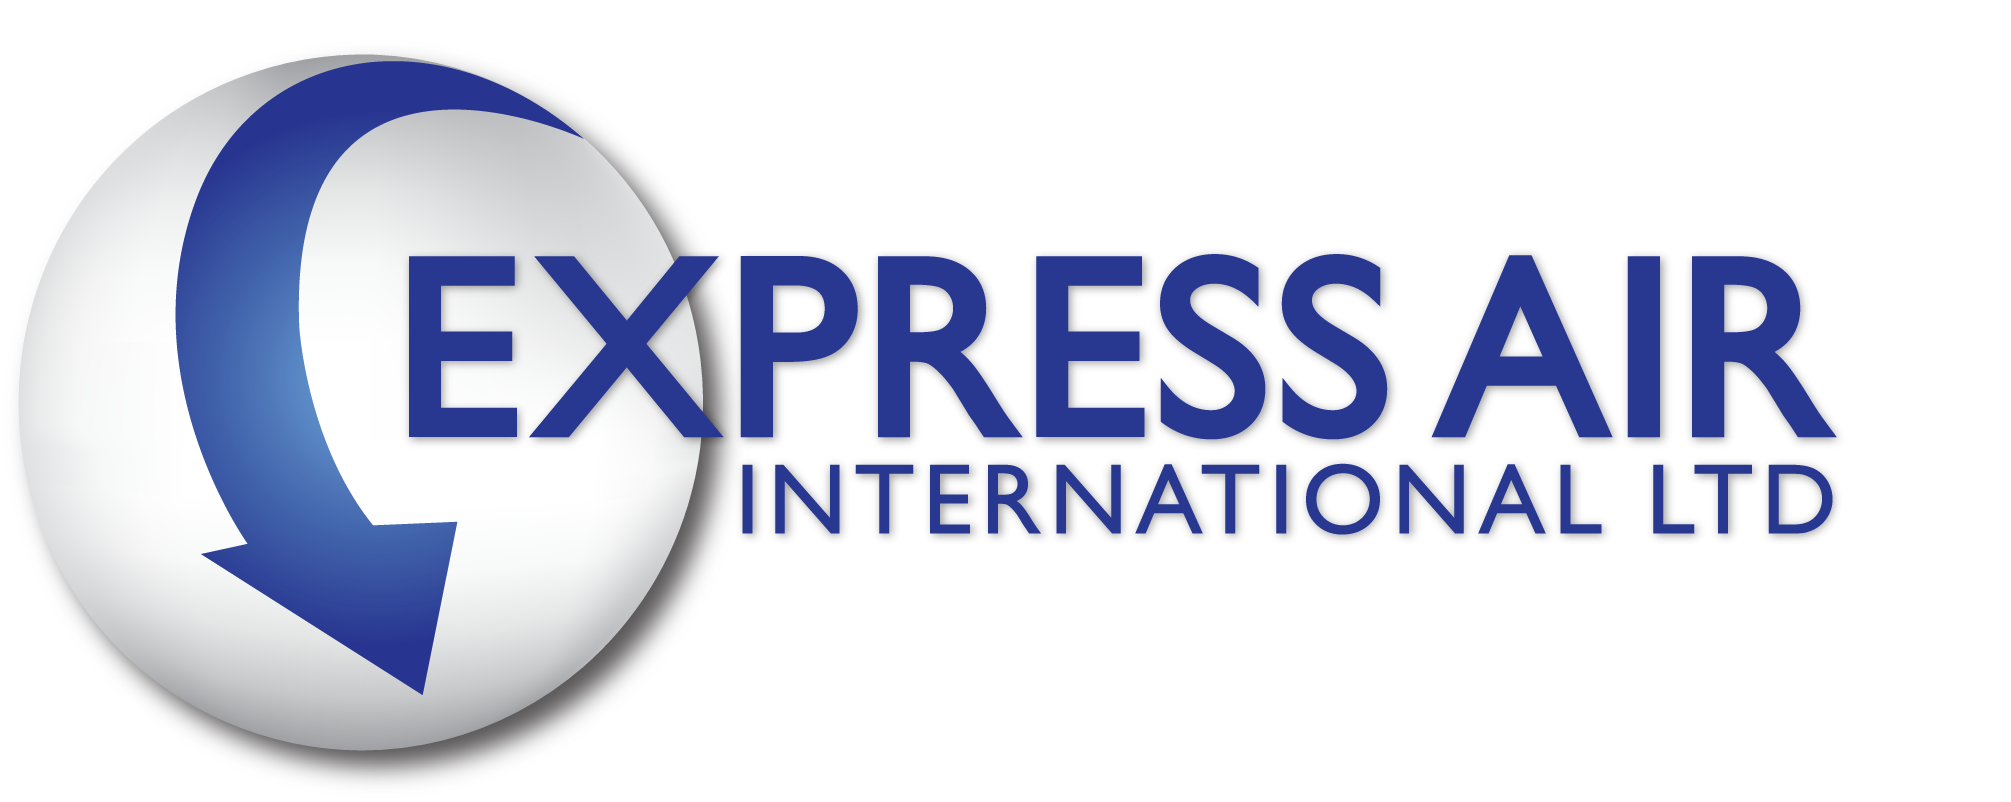 Express Air International